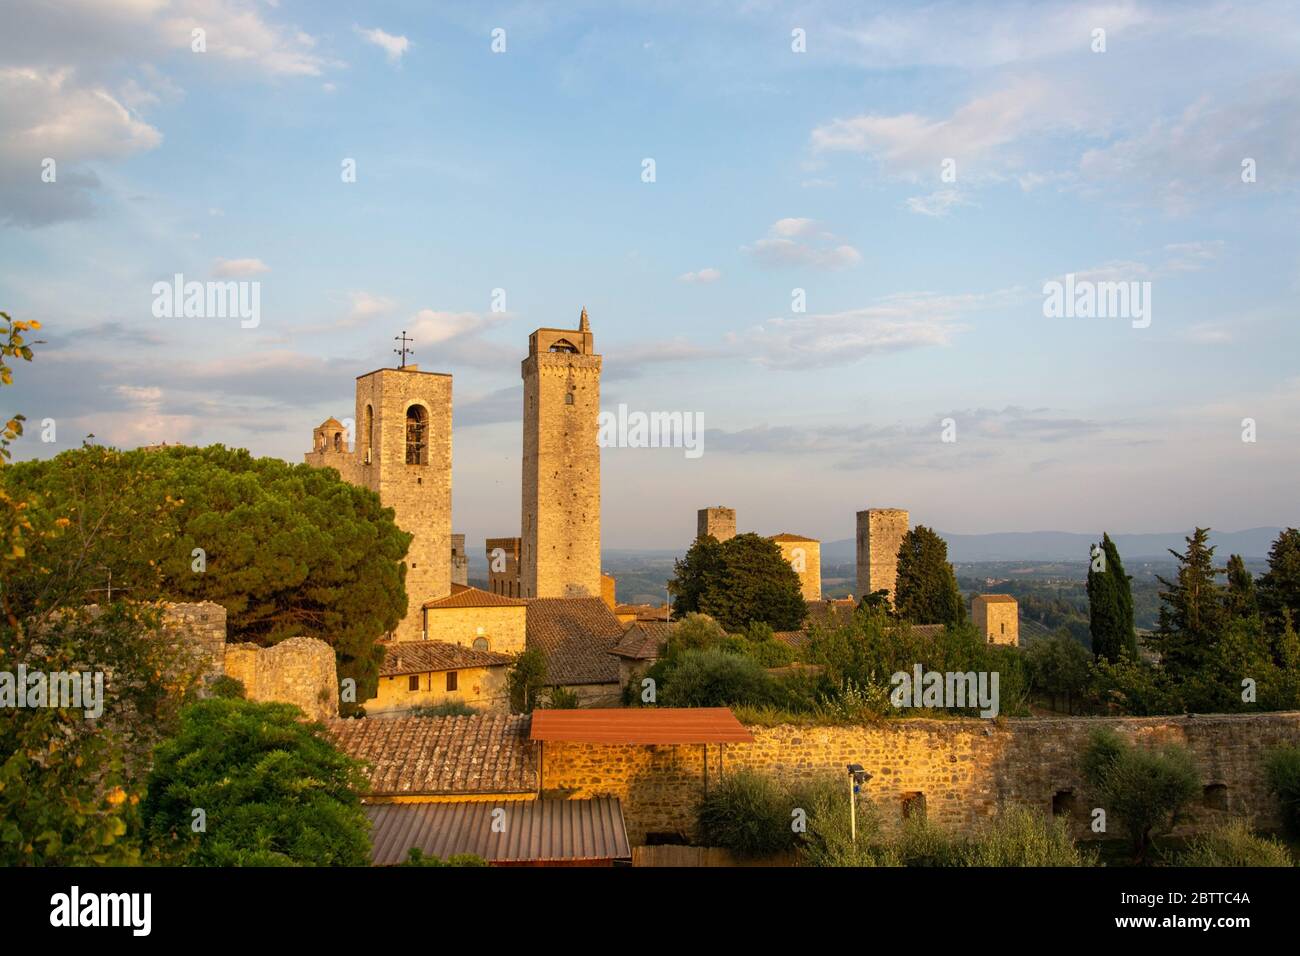 San Gimignano ist eine italienische Kleinstadt in der Provinz Siena, Toskana, Mit einem mittelalterlichen Stadtkern und wird auch "Mittelalterliches M Foto Stock